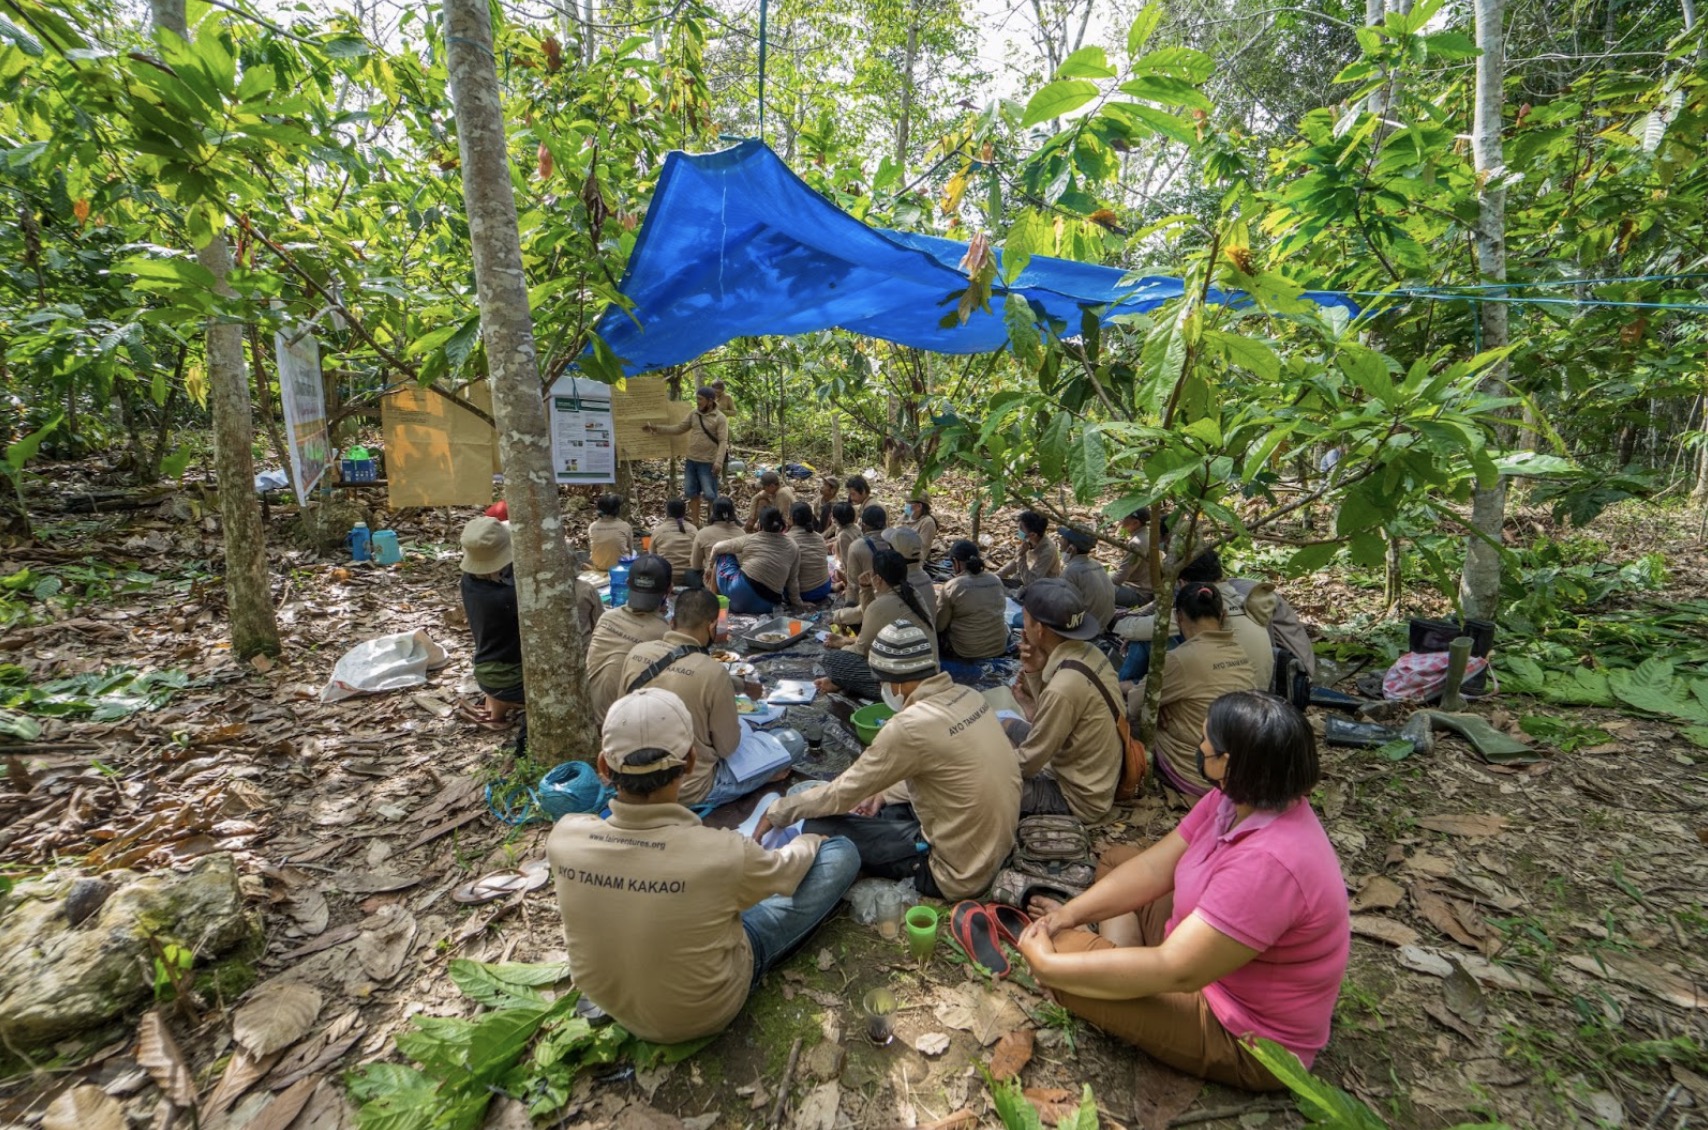 Teilnehmende der Cacao Field School sitzen im Wald auf dem Boden unter einer Plane